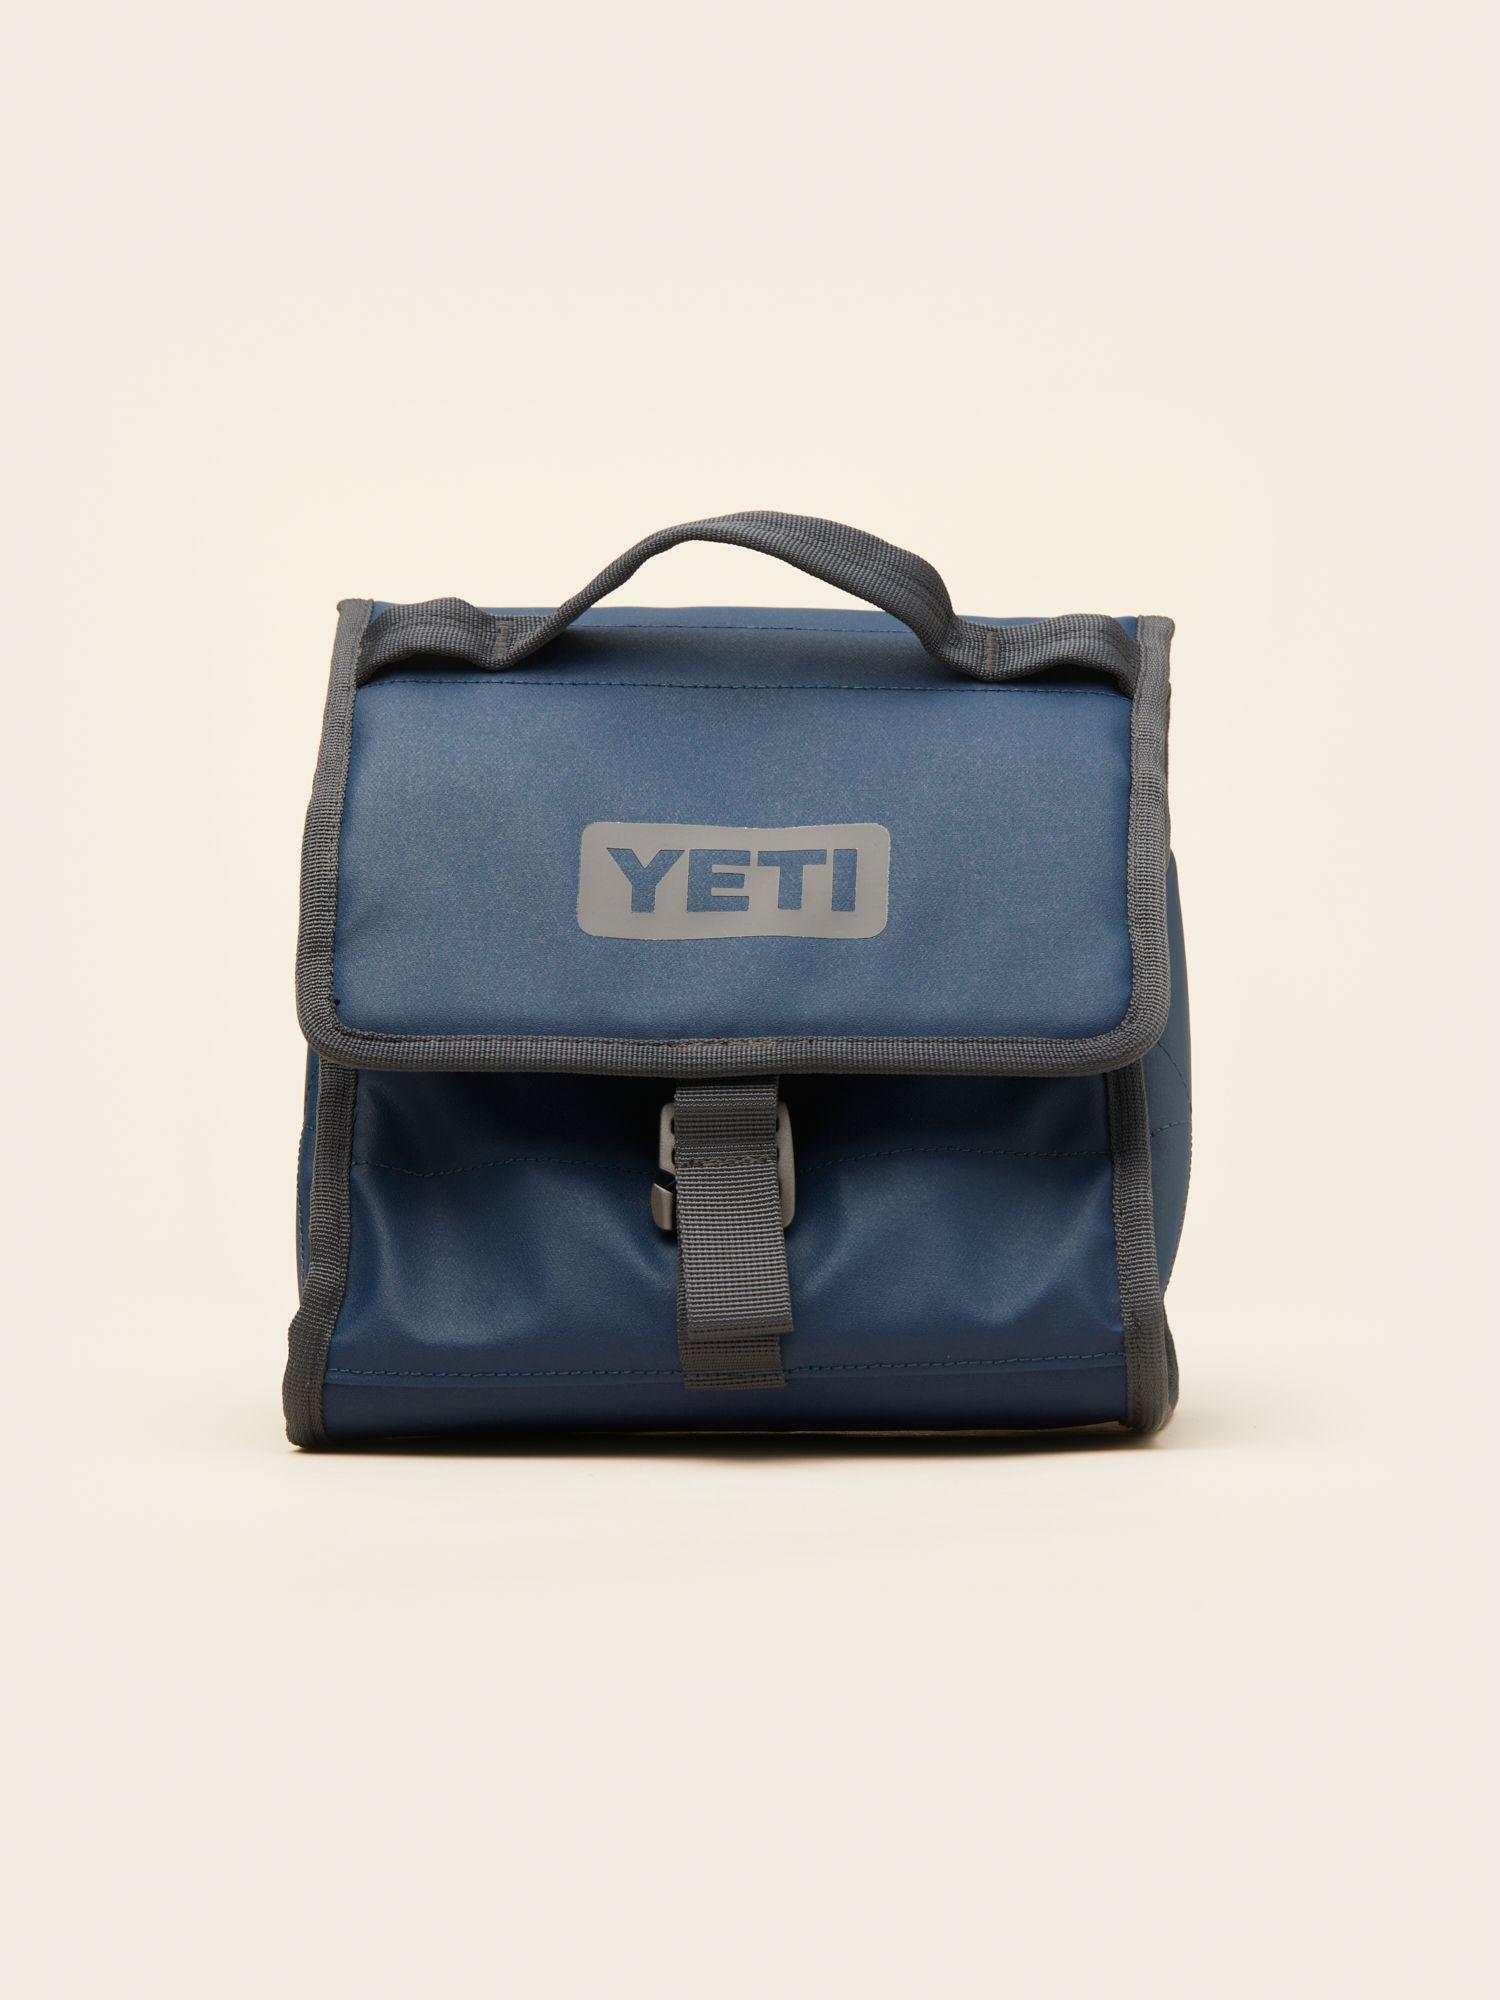 MERCHERY_Yeti lunch bag_blue.jpg